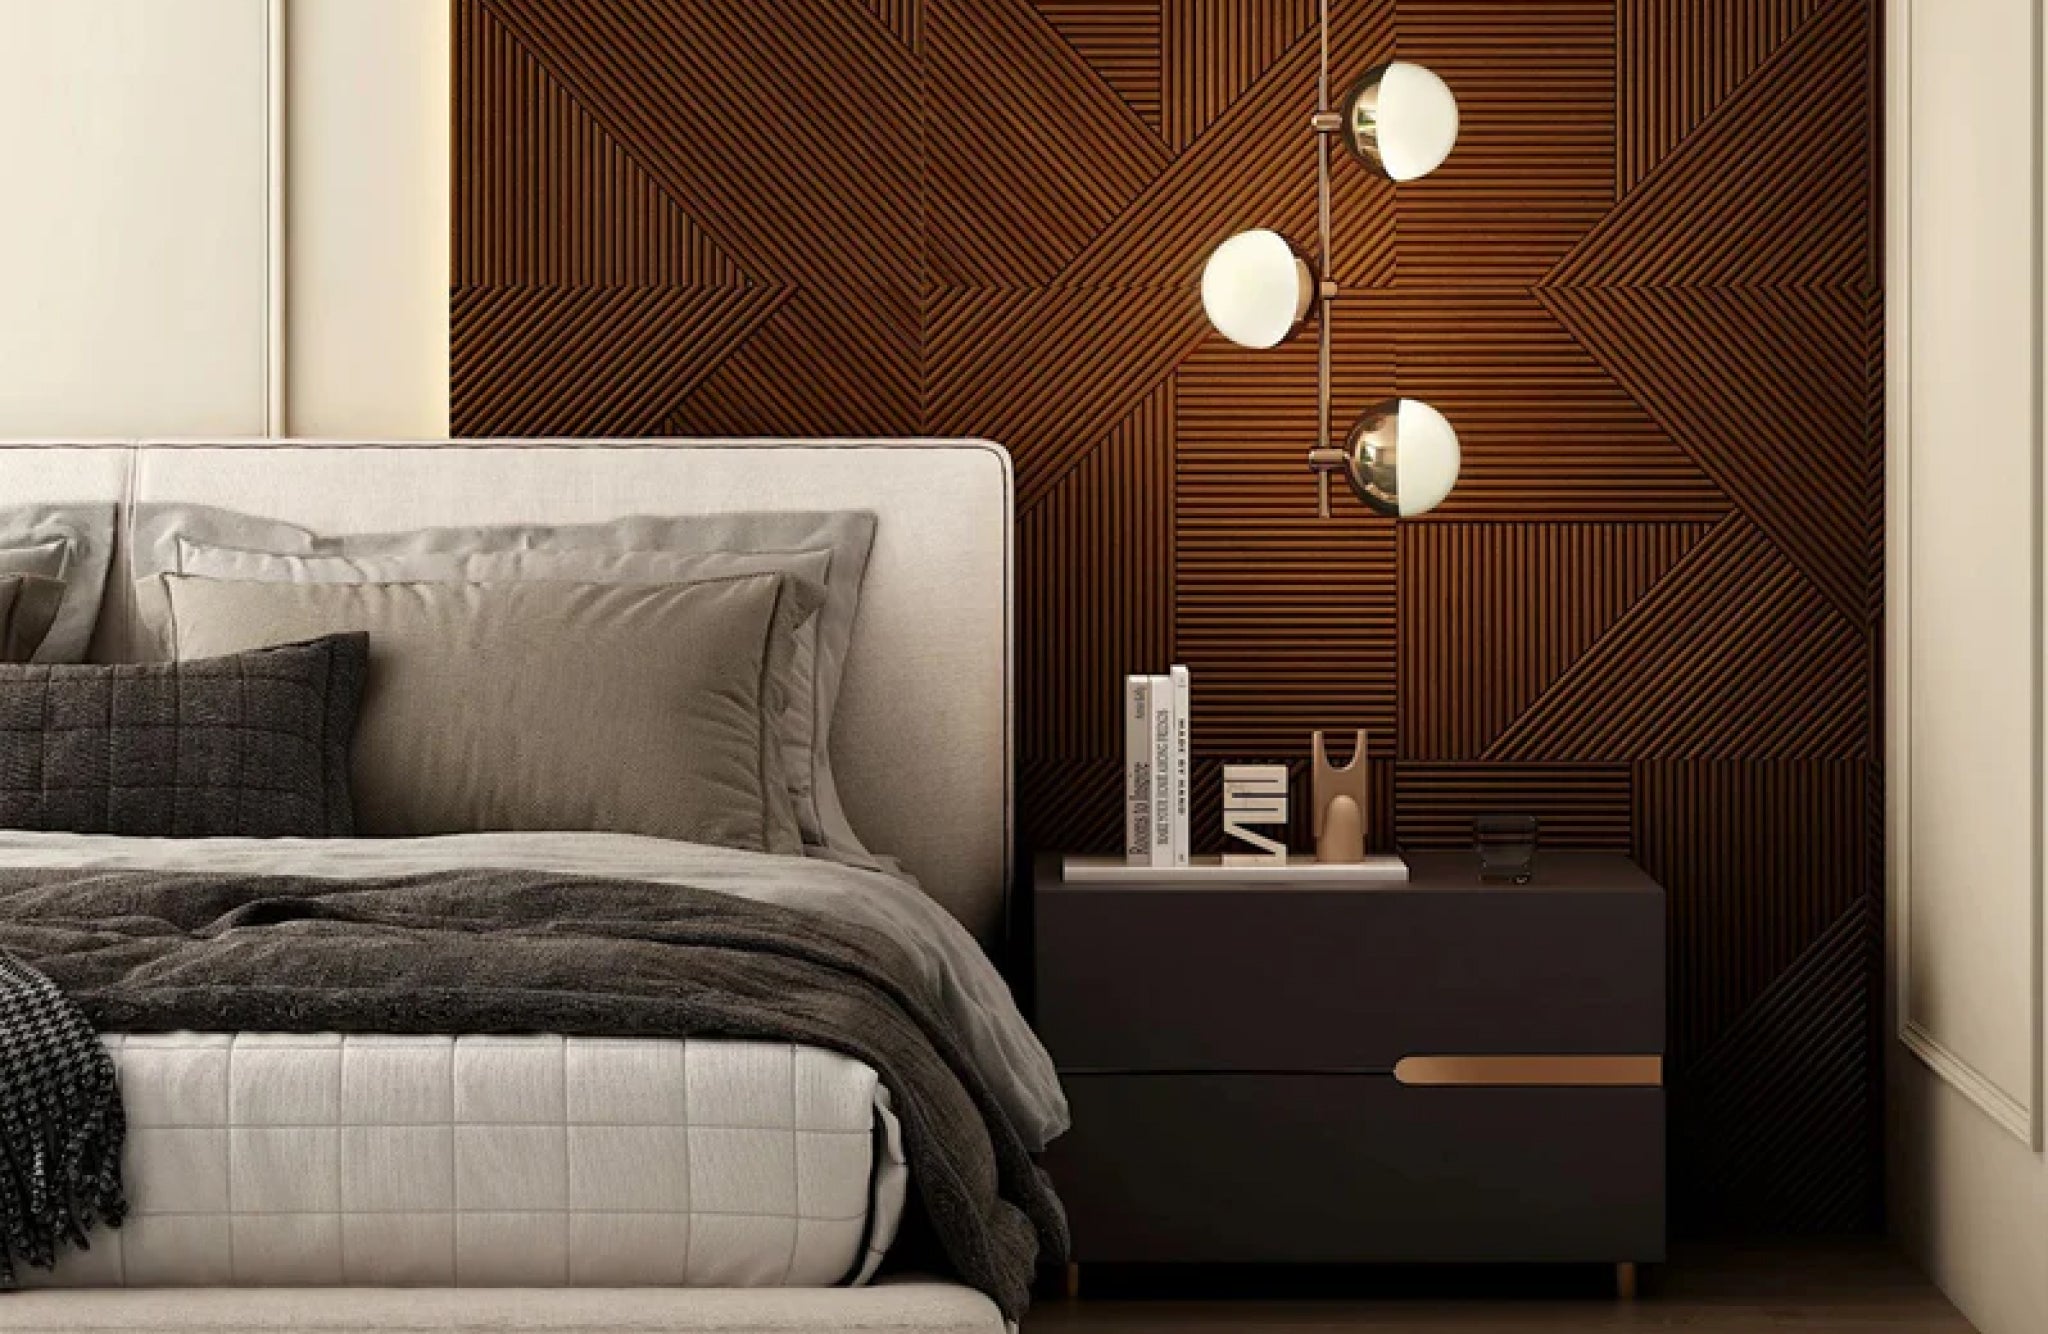 dark wood bedroom furniture decor ideas